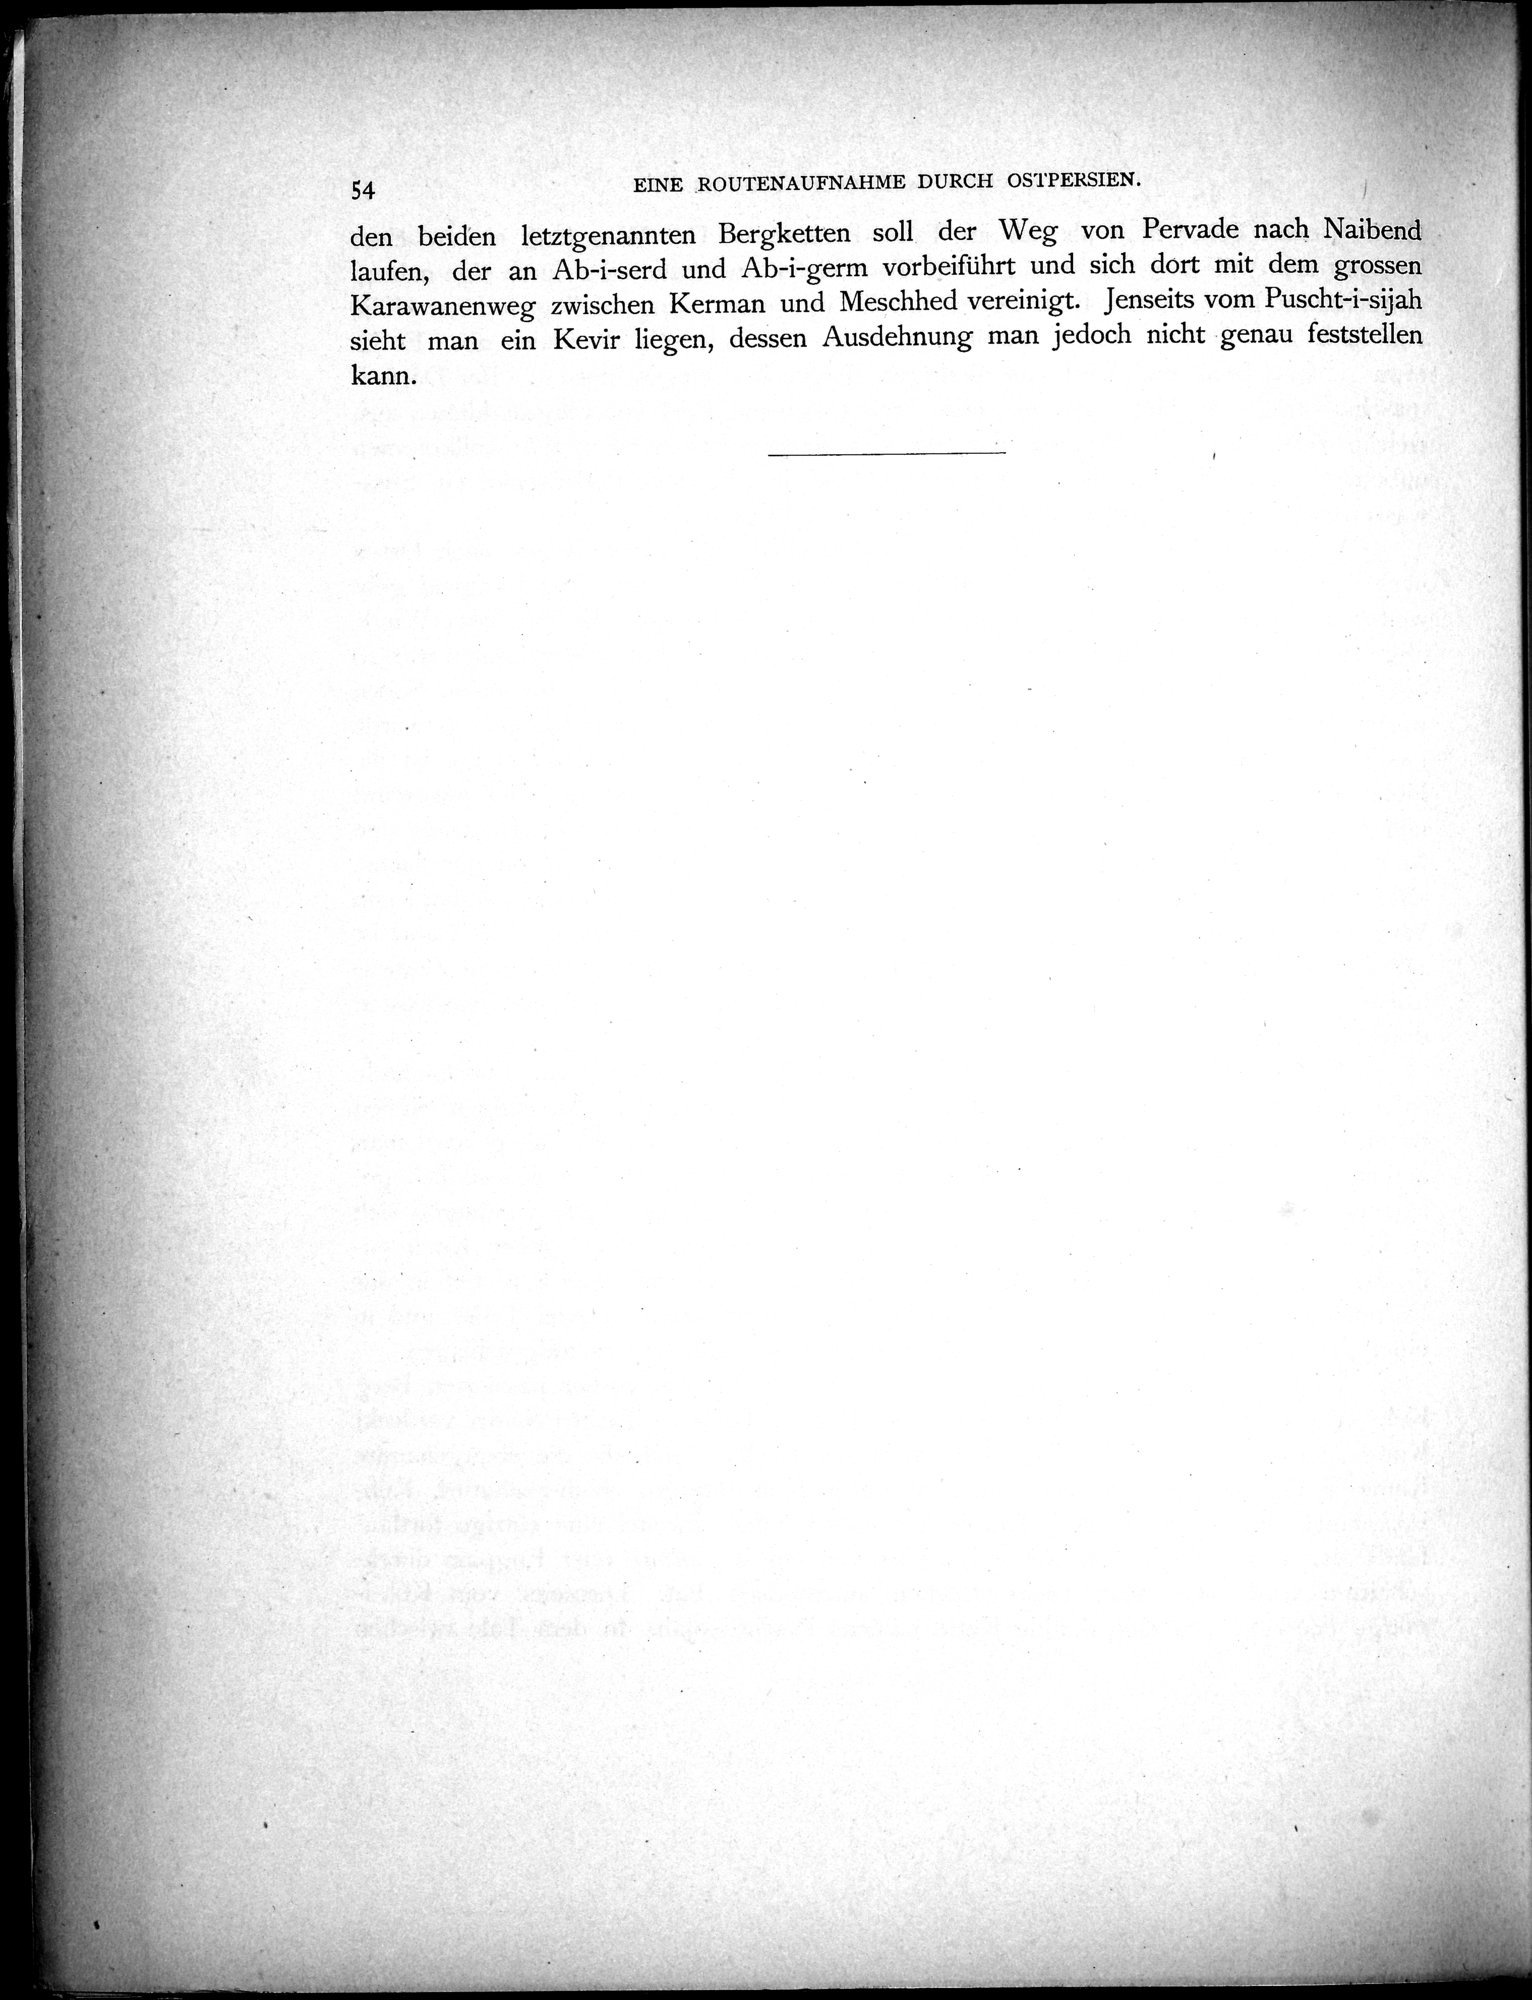 Eine Routenaufnahme durch Ostpersien : vol.1 / Page 178 (Grayscale High Resolution Image)